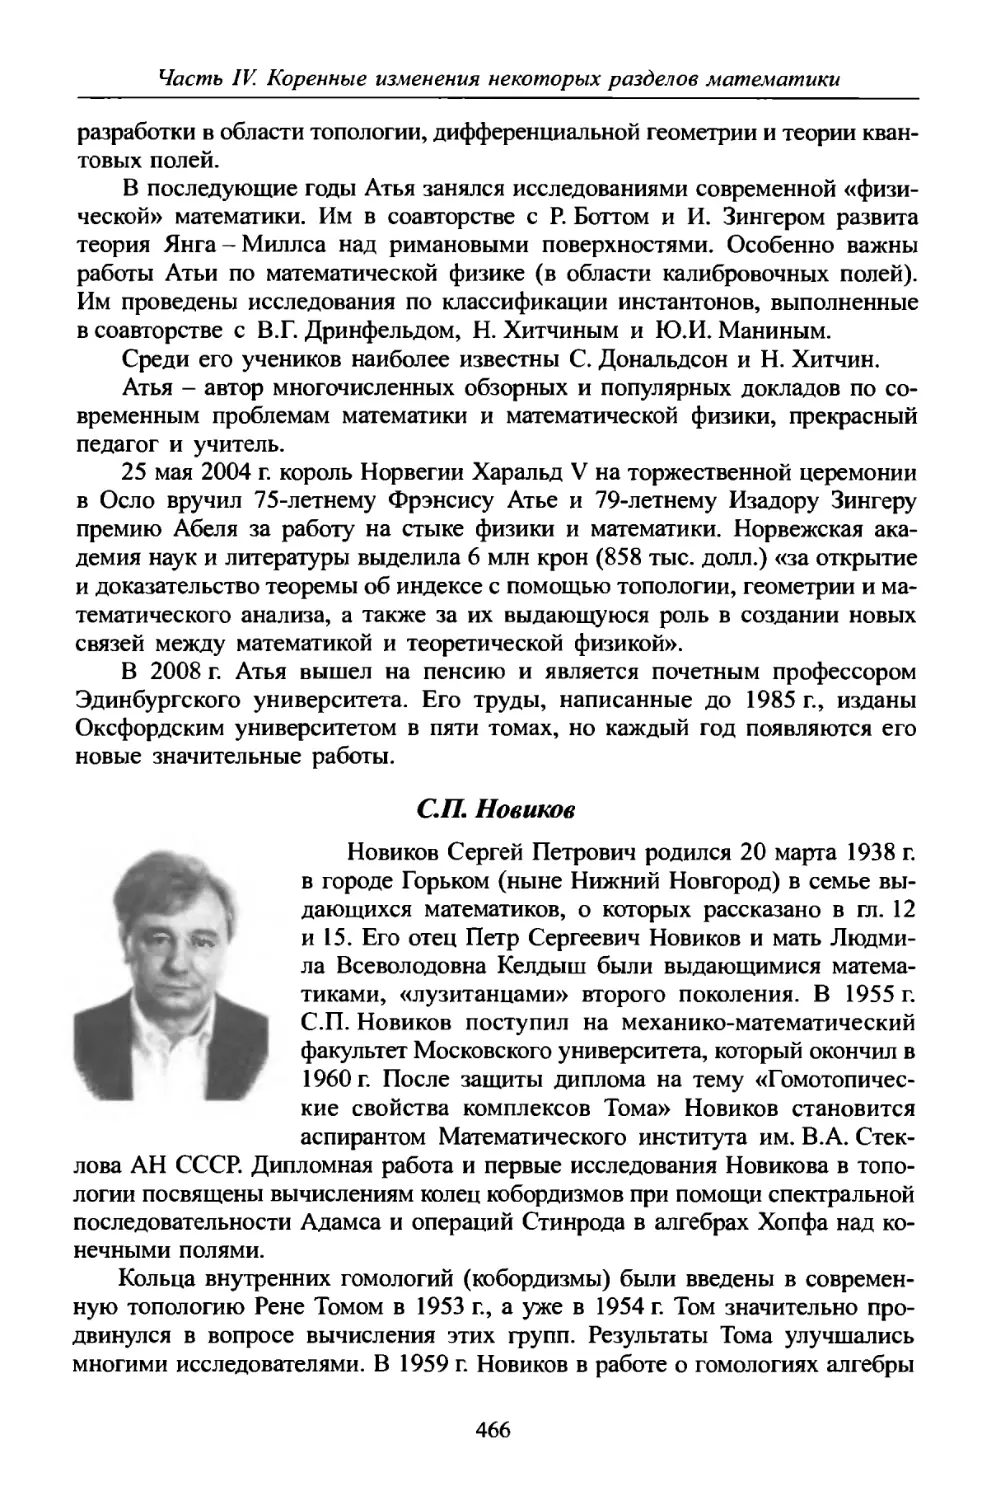 C.П. Новиков